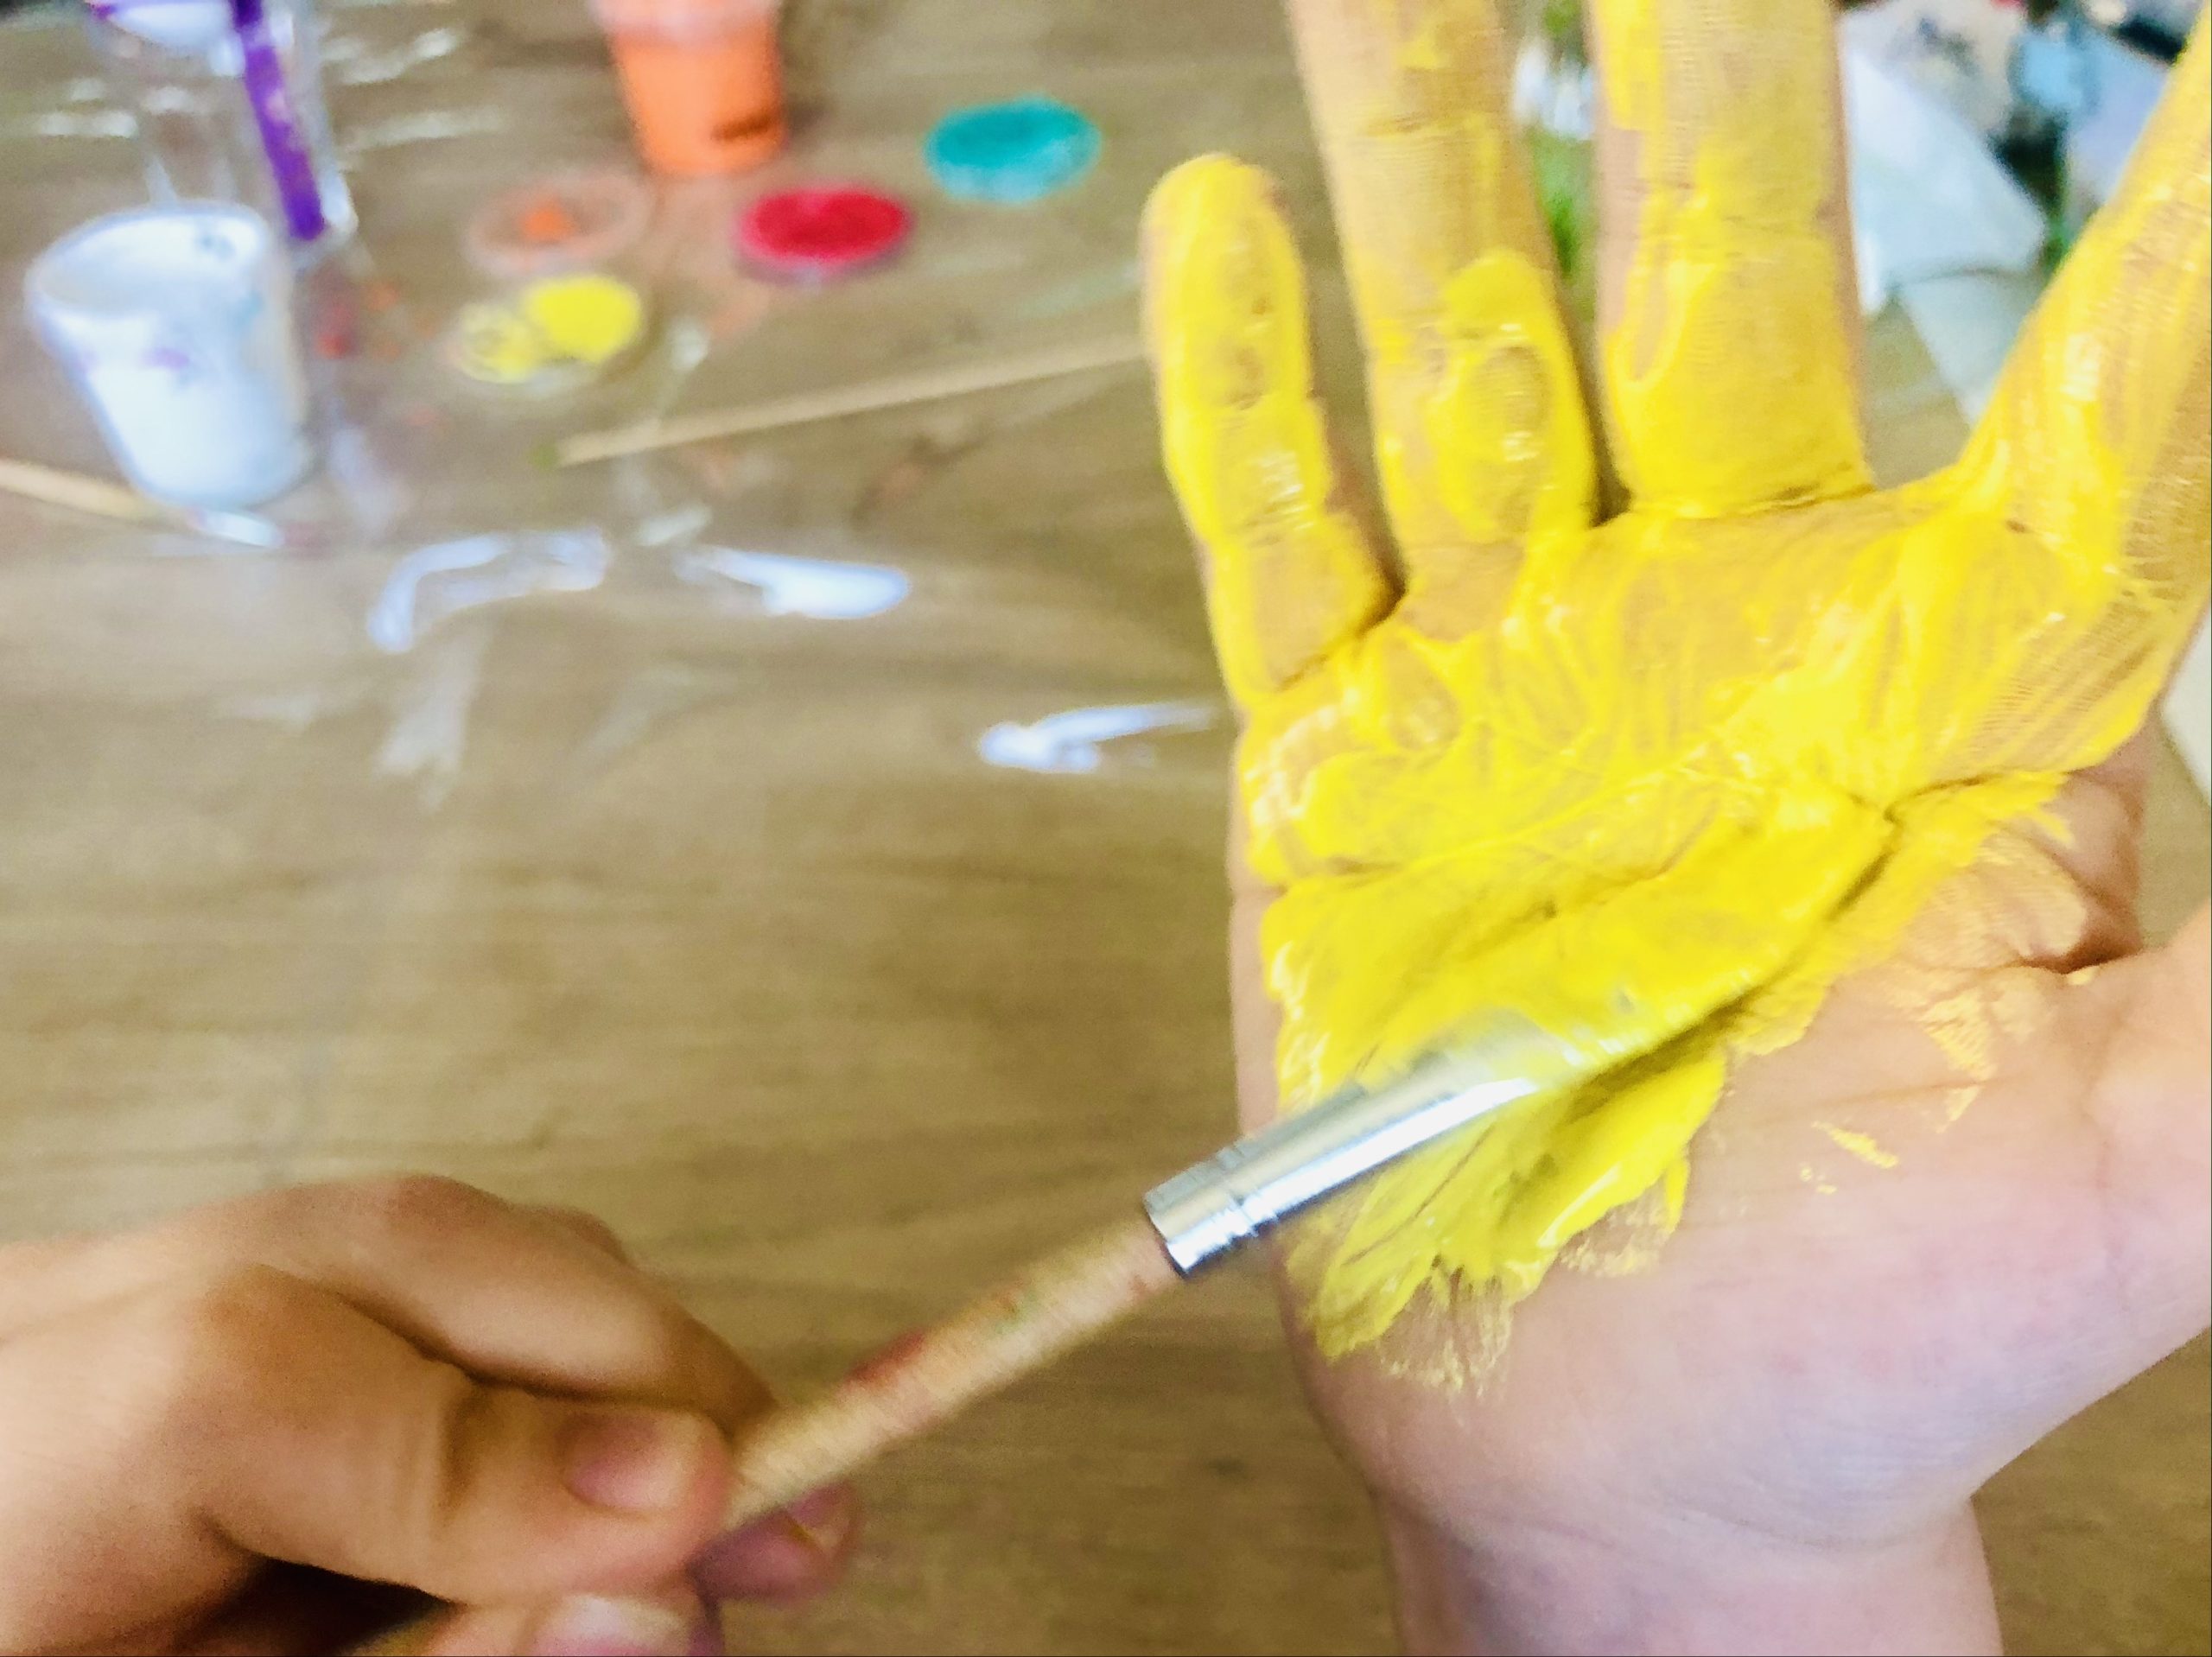 Bild zum Schritt 11 für die Kinder-Beschäftigung: 'Hierfür malt ihr ebenfalls eine Hand mit gelber Fingerfarbe an.'